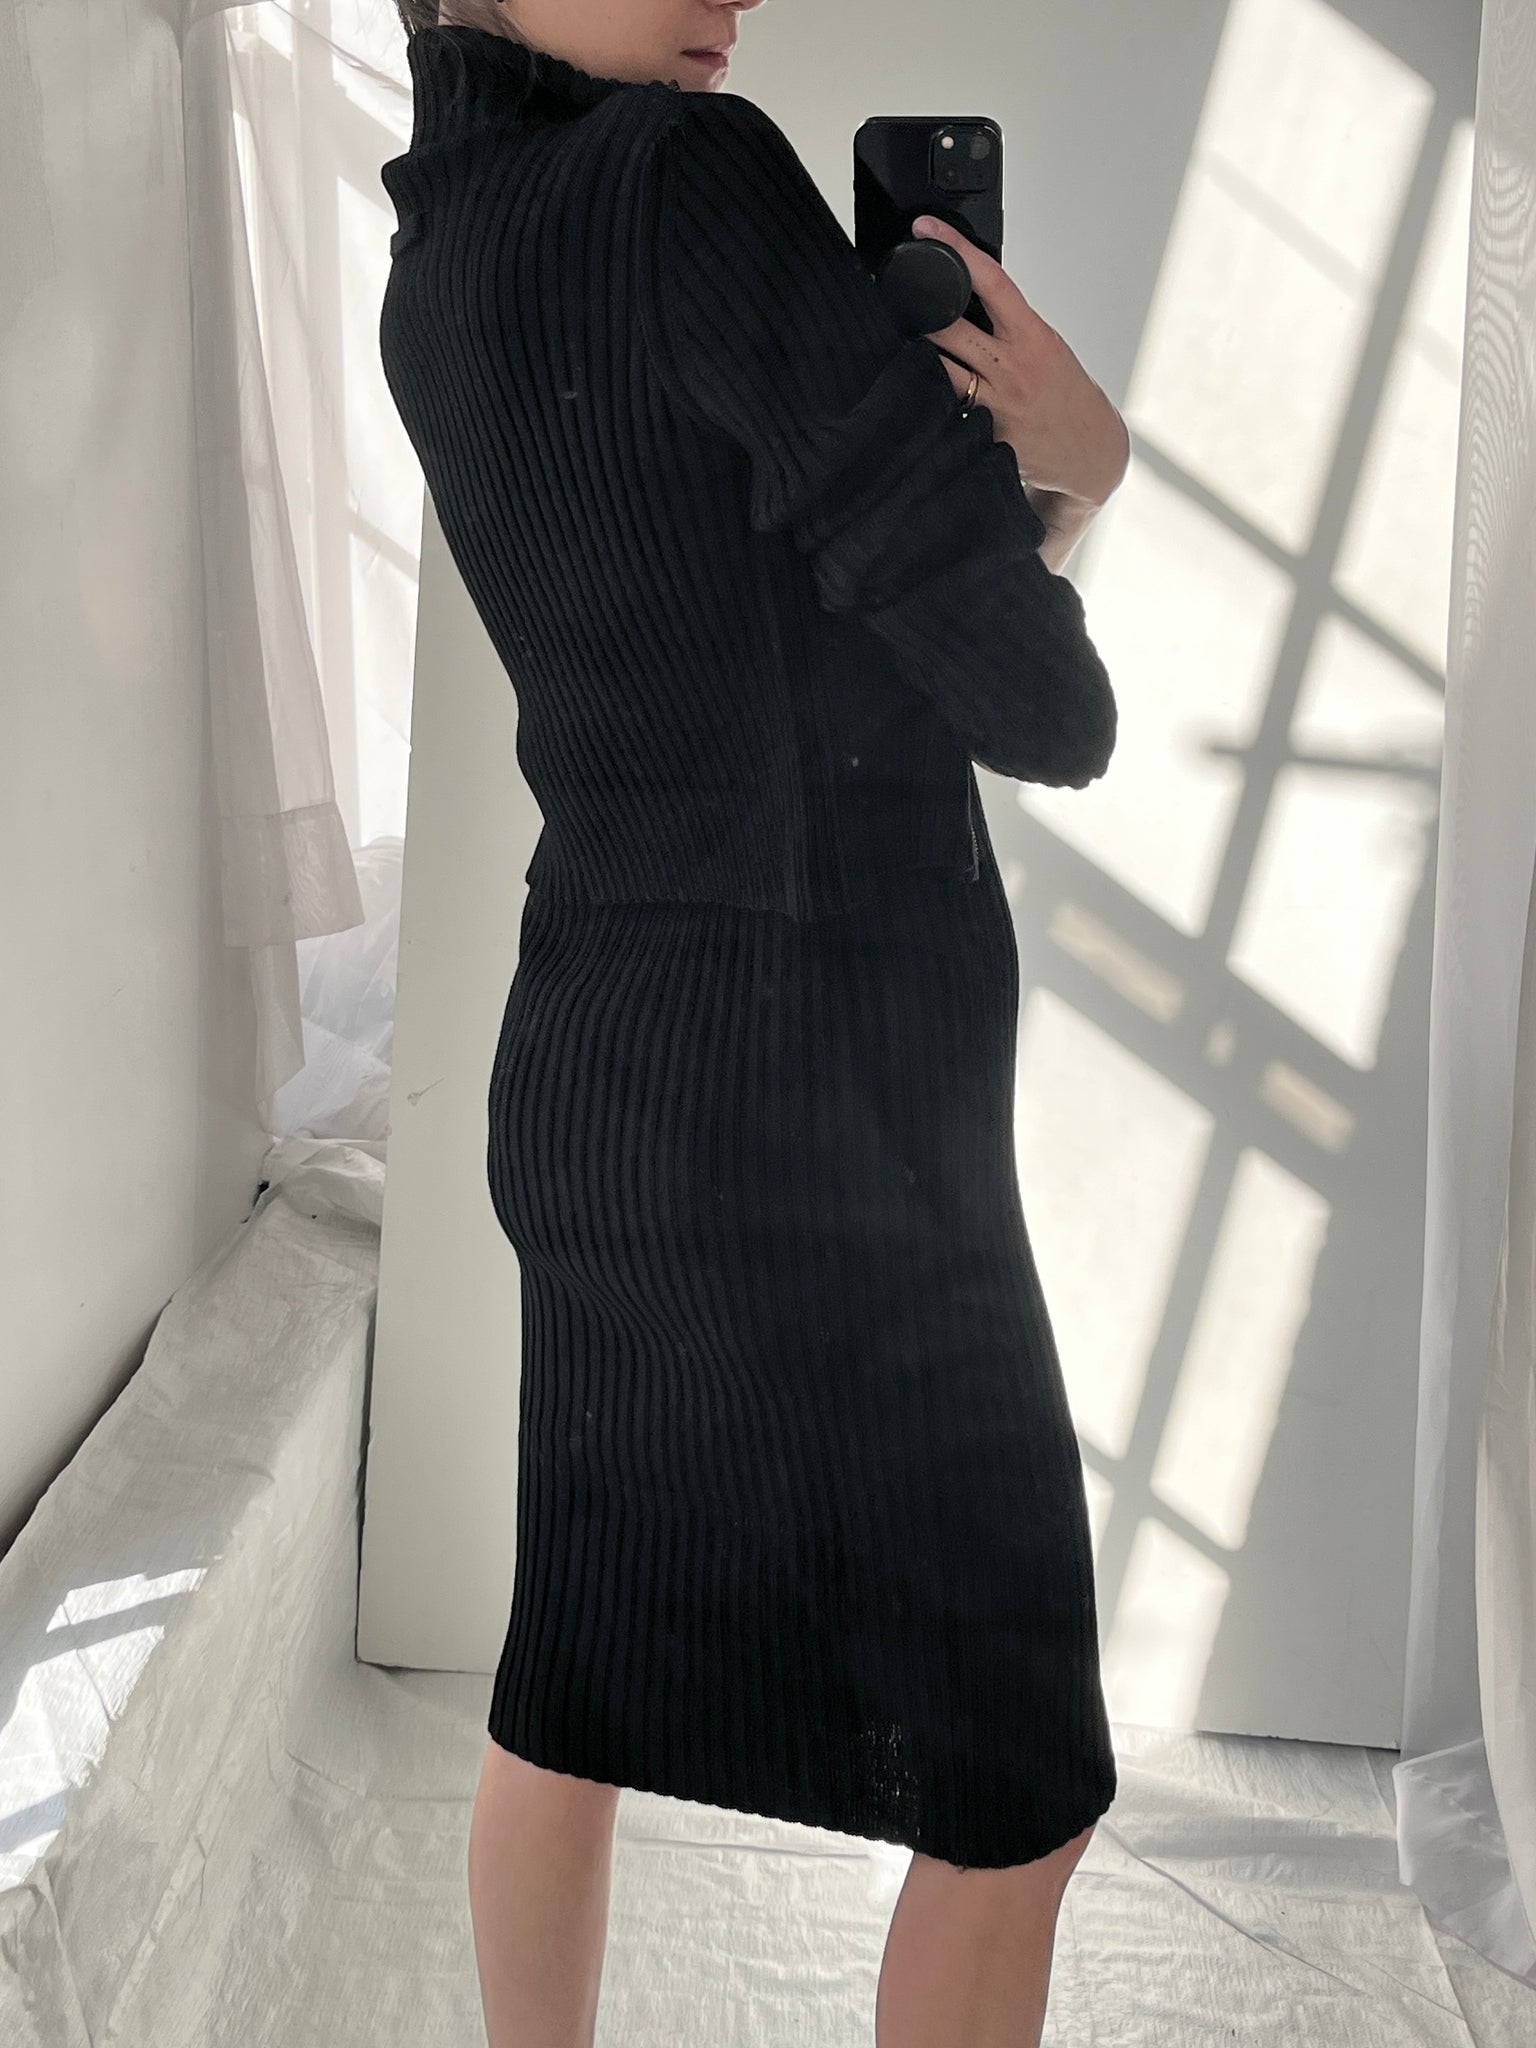 Jean Paul Gaultier Knit Dress & Jacket Gown